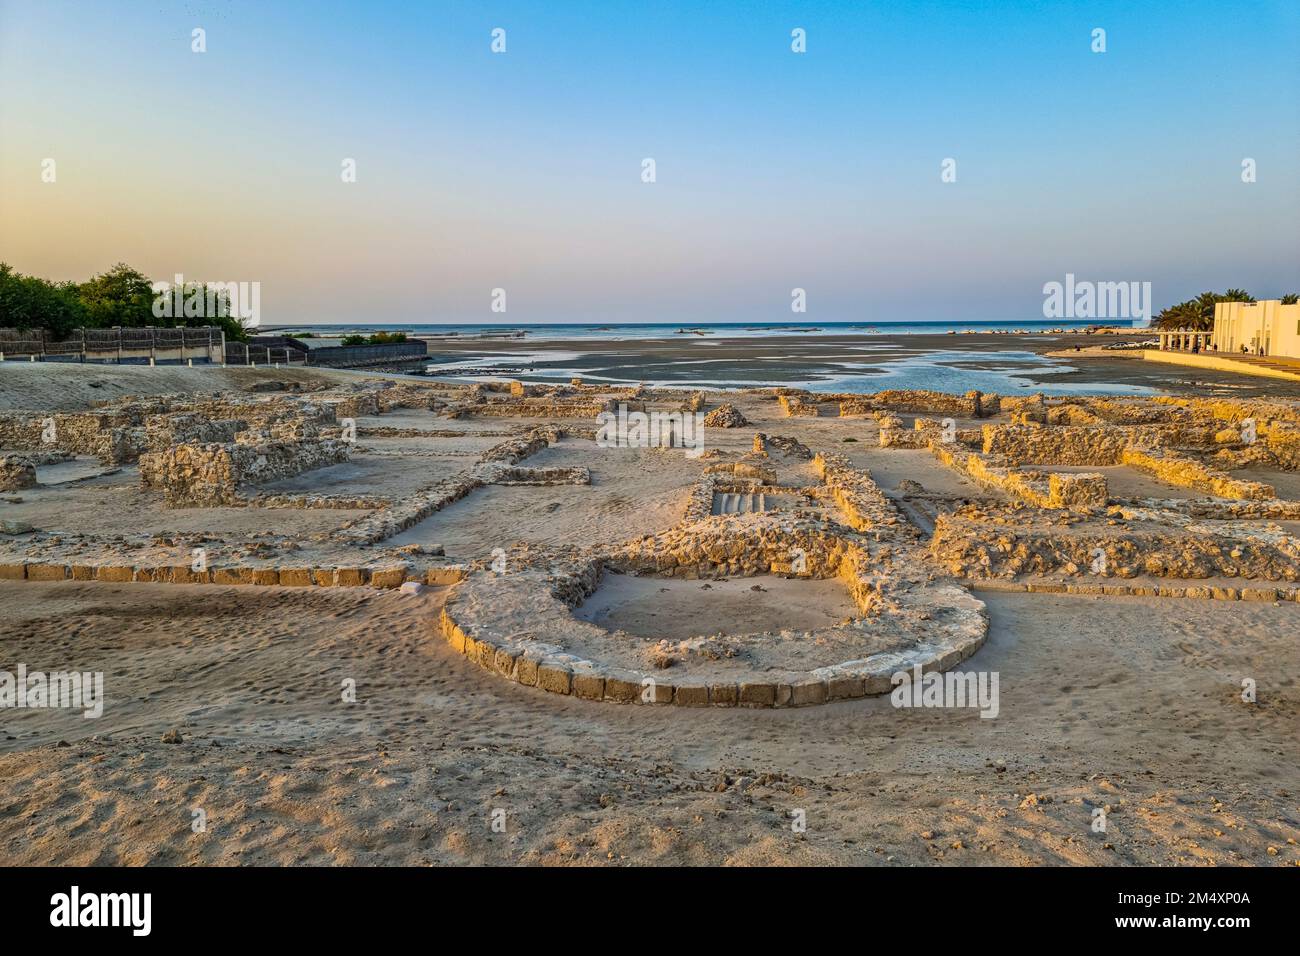 Bahreïn, gouvernorat de la capitale, vestiges anciens du fort de Qalat Al-Bahrain Banque D'Images